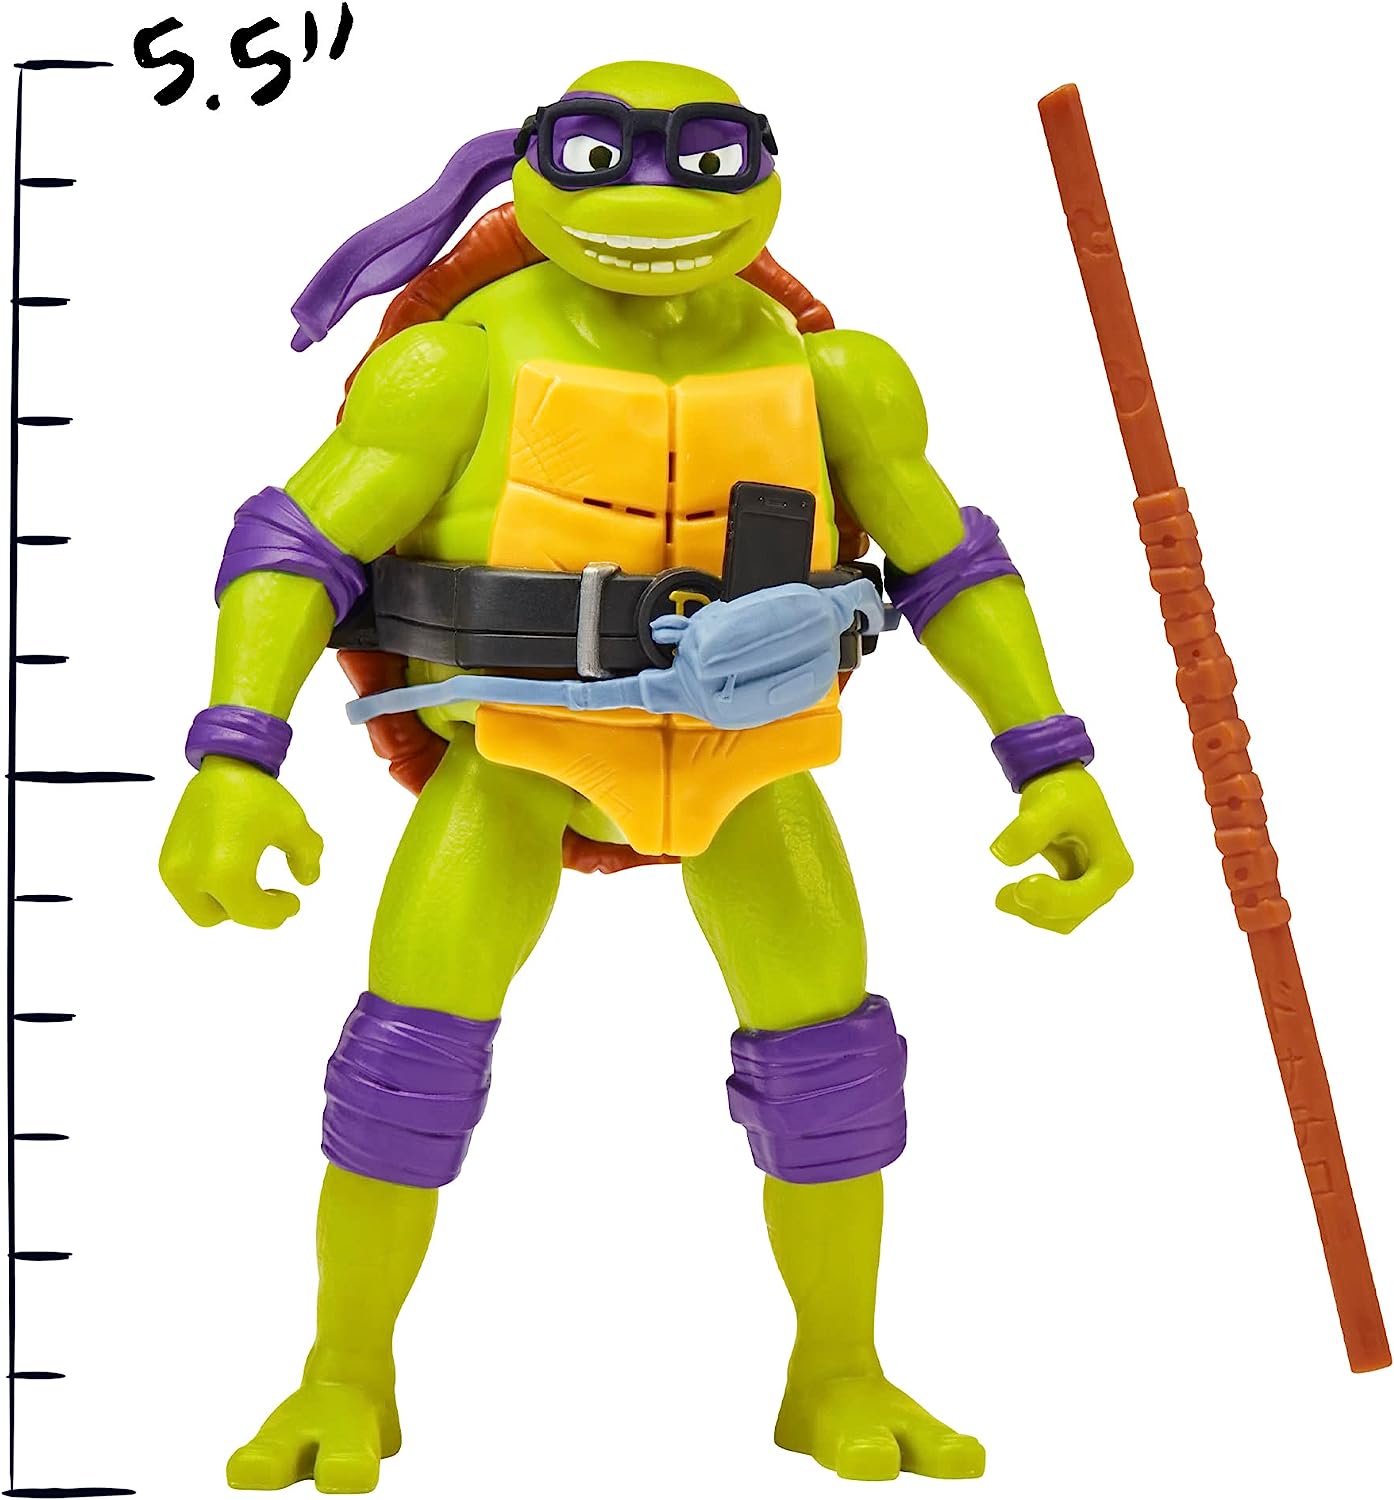 Teenage Mutant Ninja Turtle - Ninja Shouts - Donatello